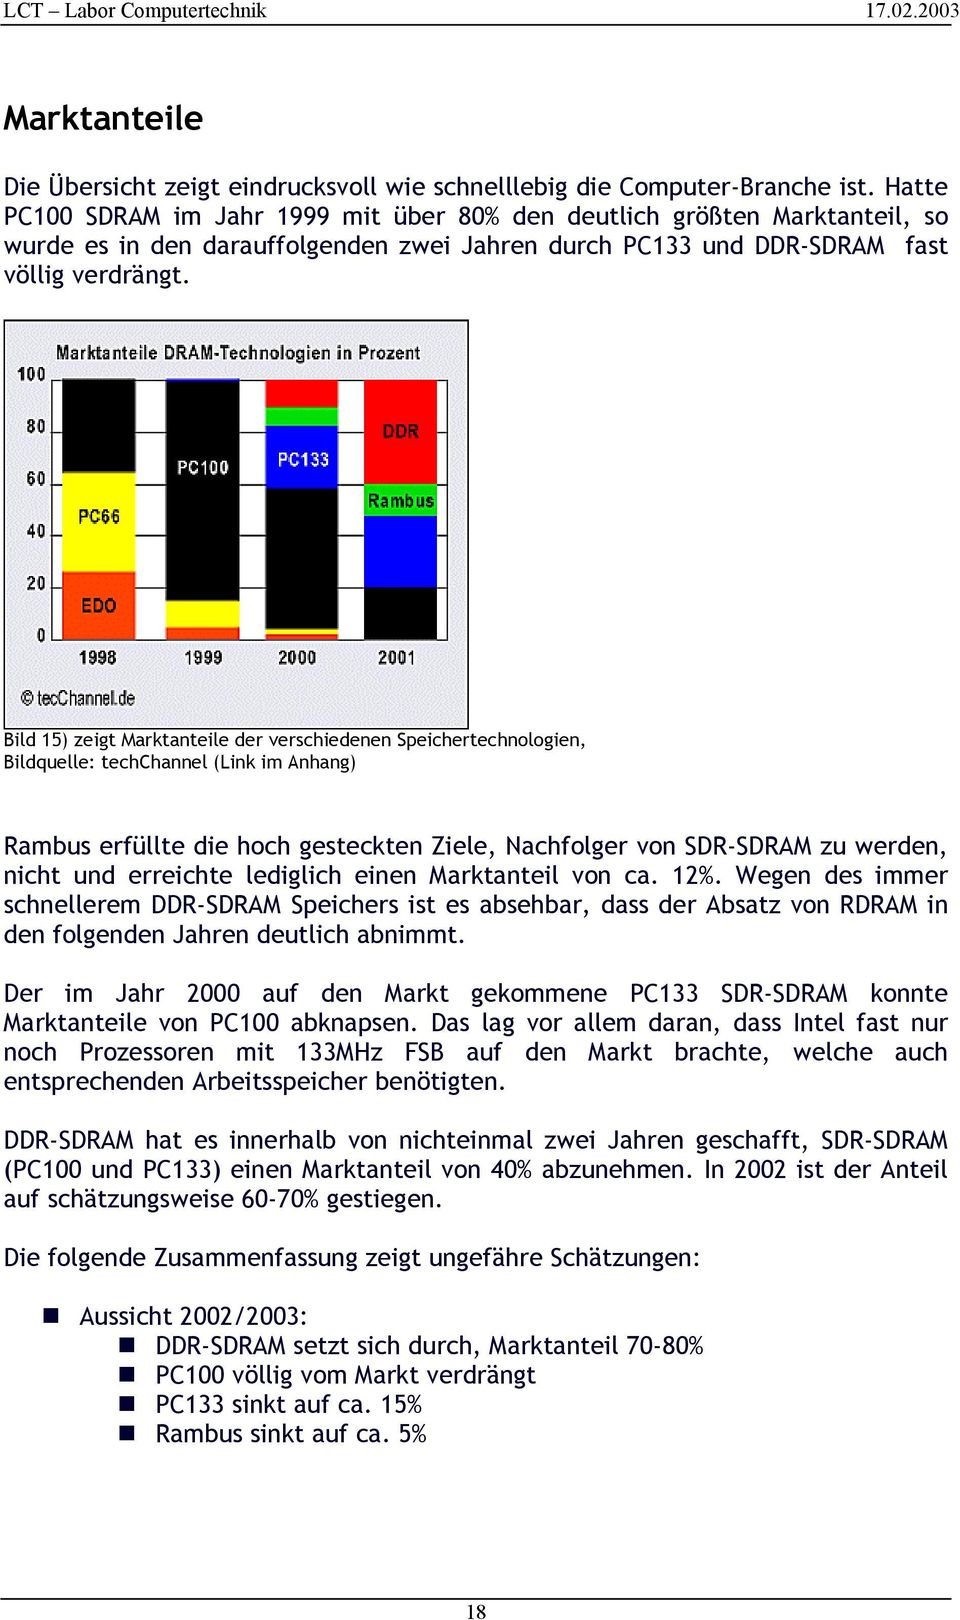 Bild 15) zeigt Marktanteile der verschiedenen Speichertechnologien, Bildquelle: techchannel (Link im Anhang) Rambus erfüllte die hoch gesteckten Ziele, Nachfolger von SDR-SDRAM zu werden, nicht und